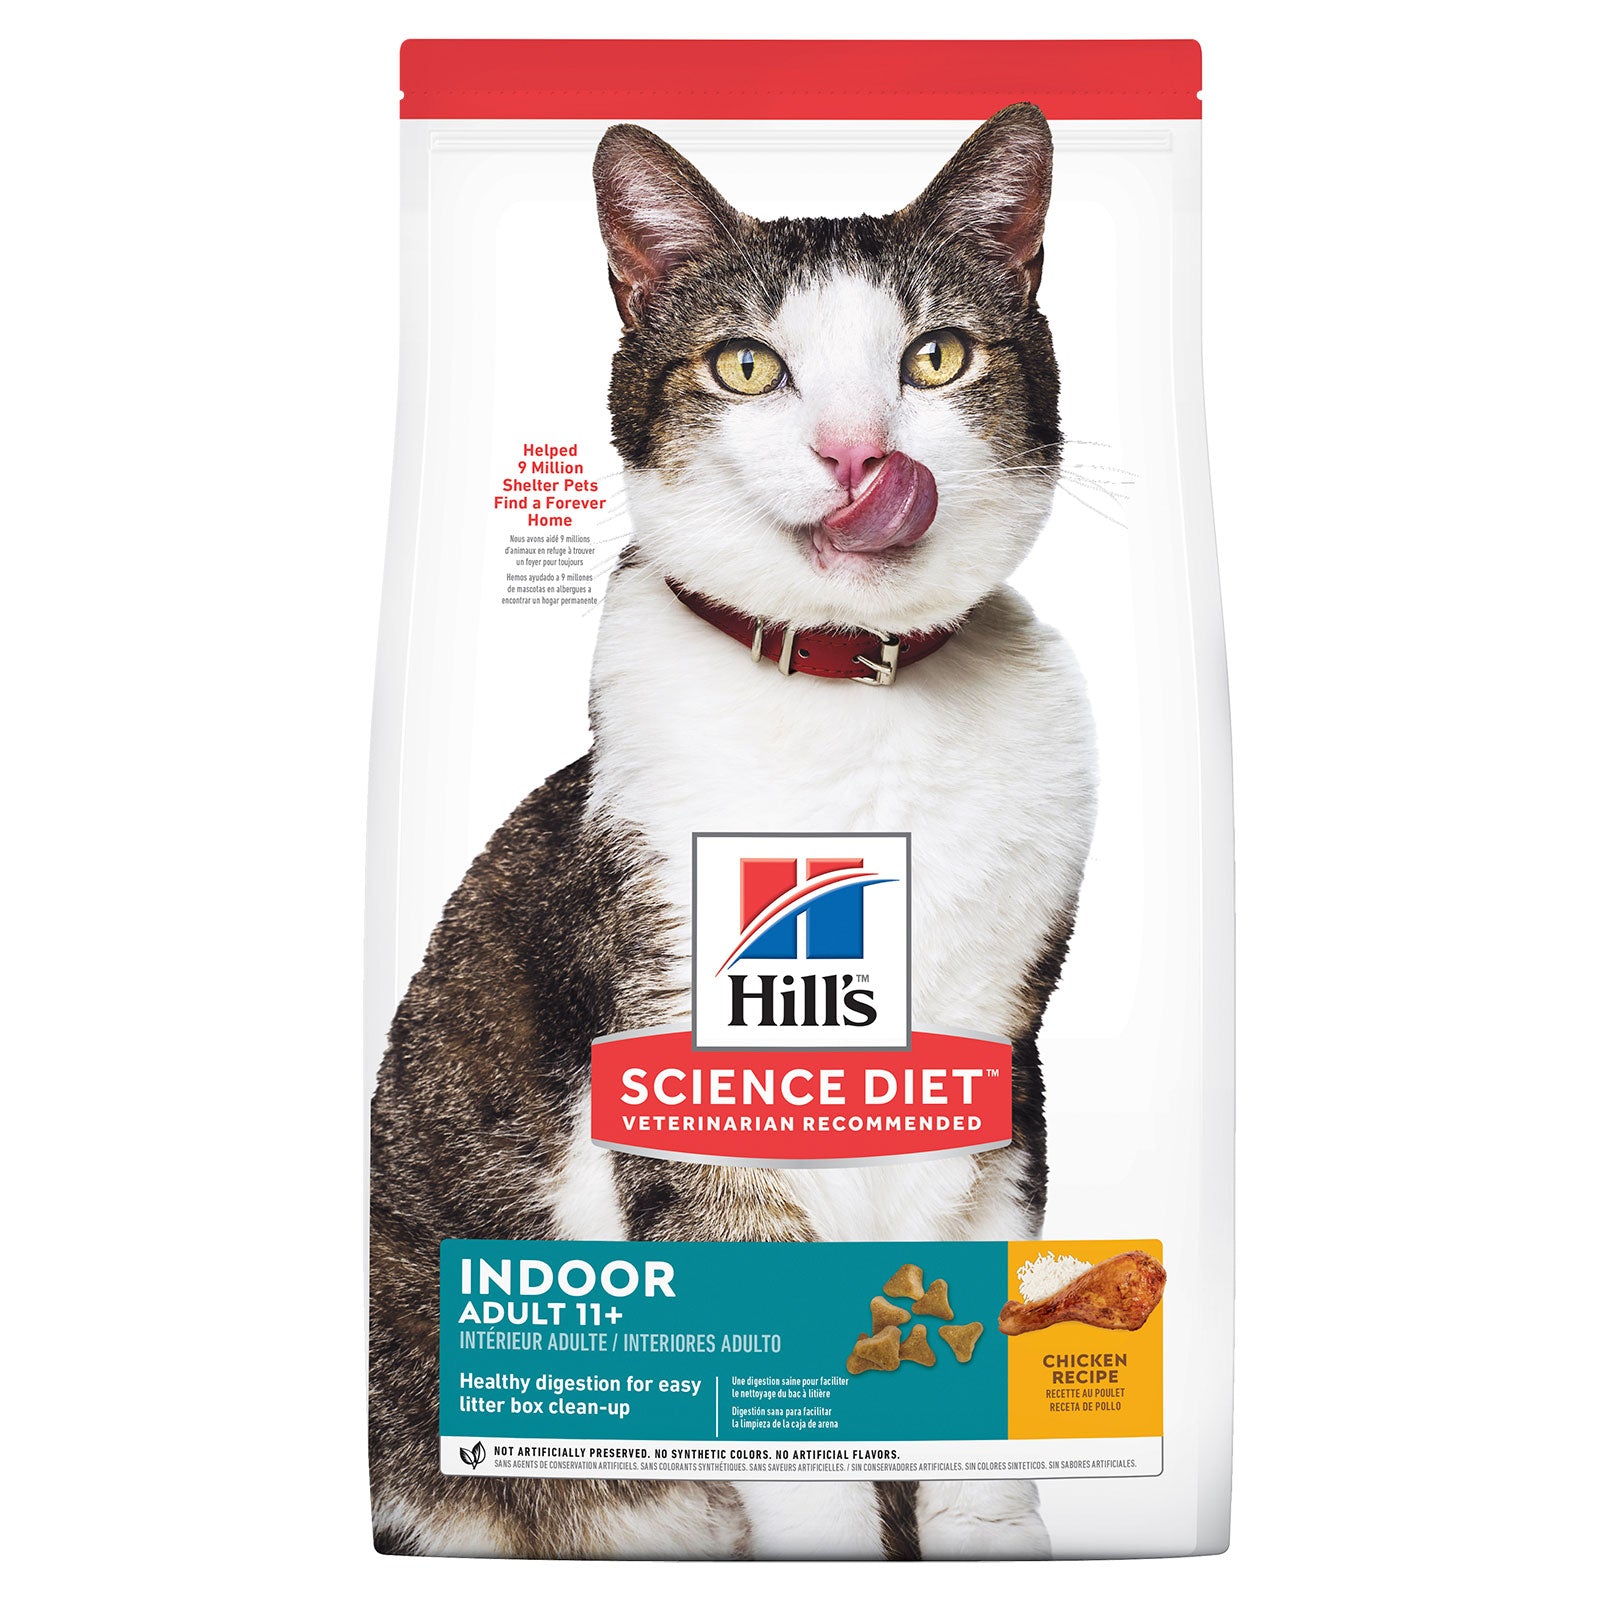 Hill's Science Diet Cat Food Adult 11+ Indoor